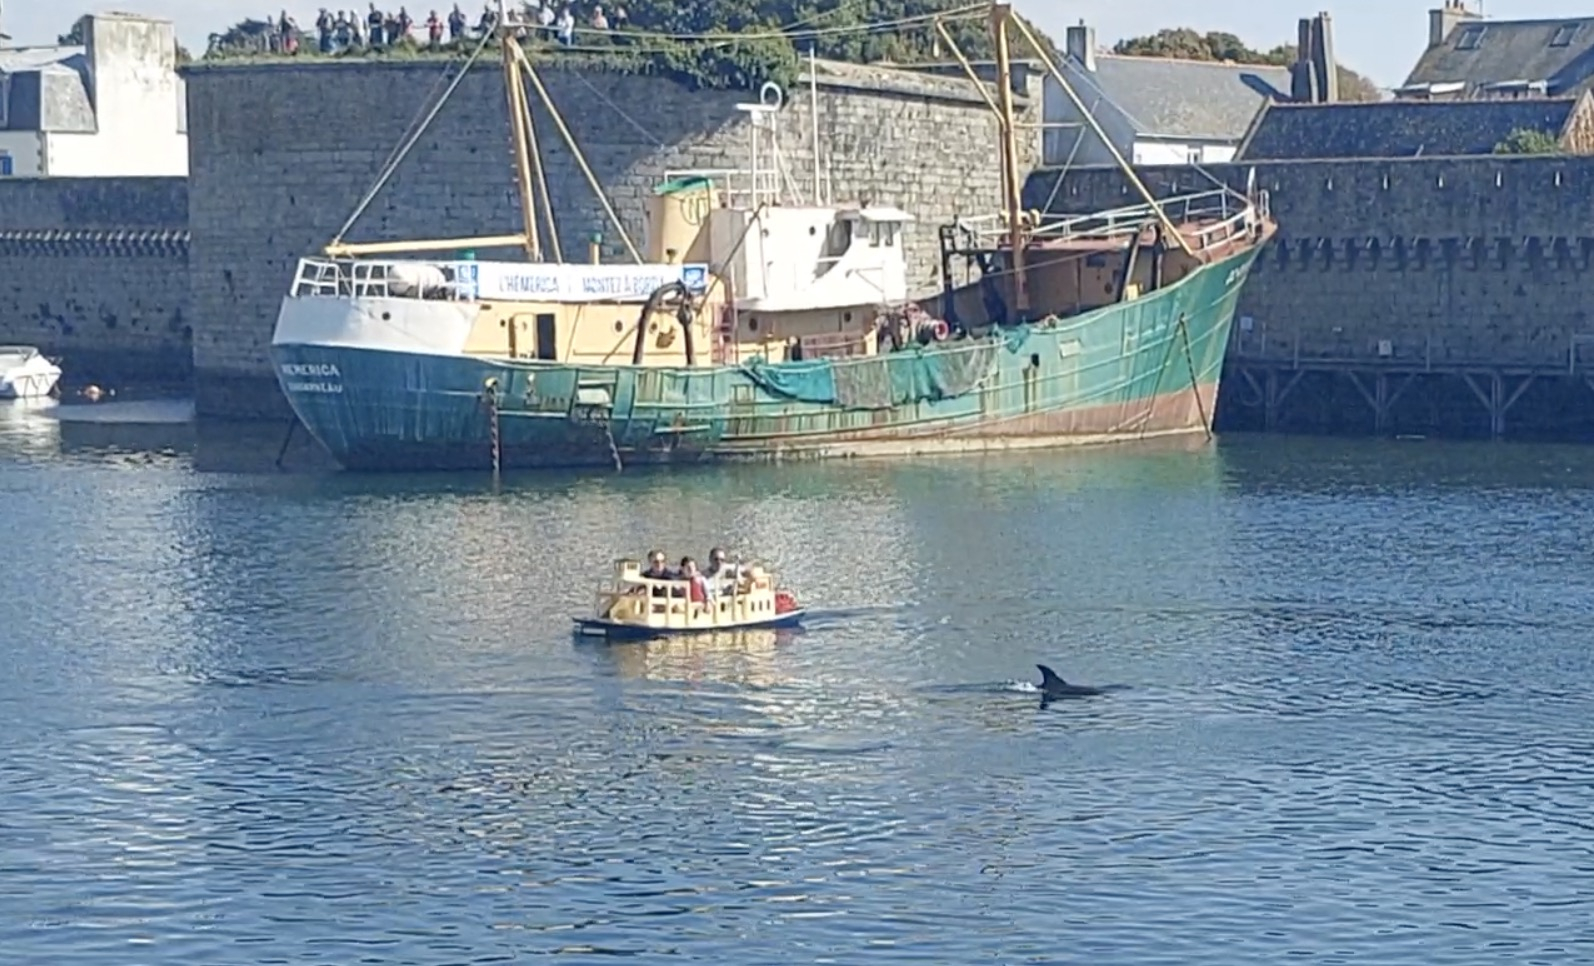 Quatre dauphins font le show dans le port de Concarneau (Le Télégramme)